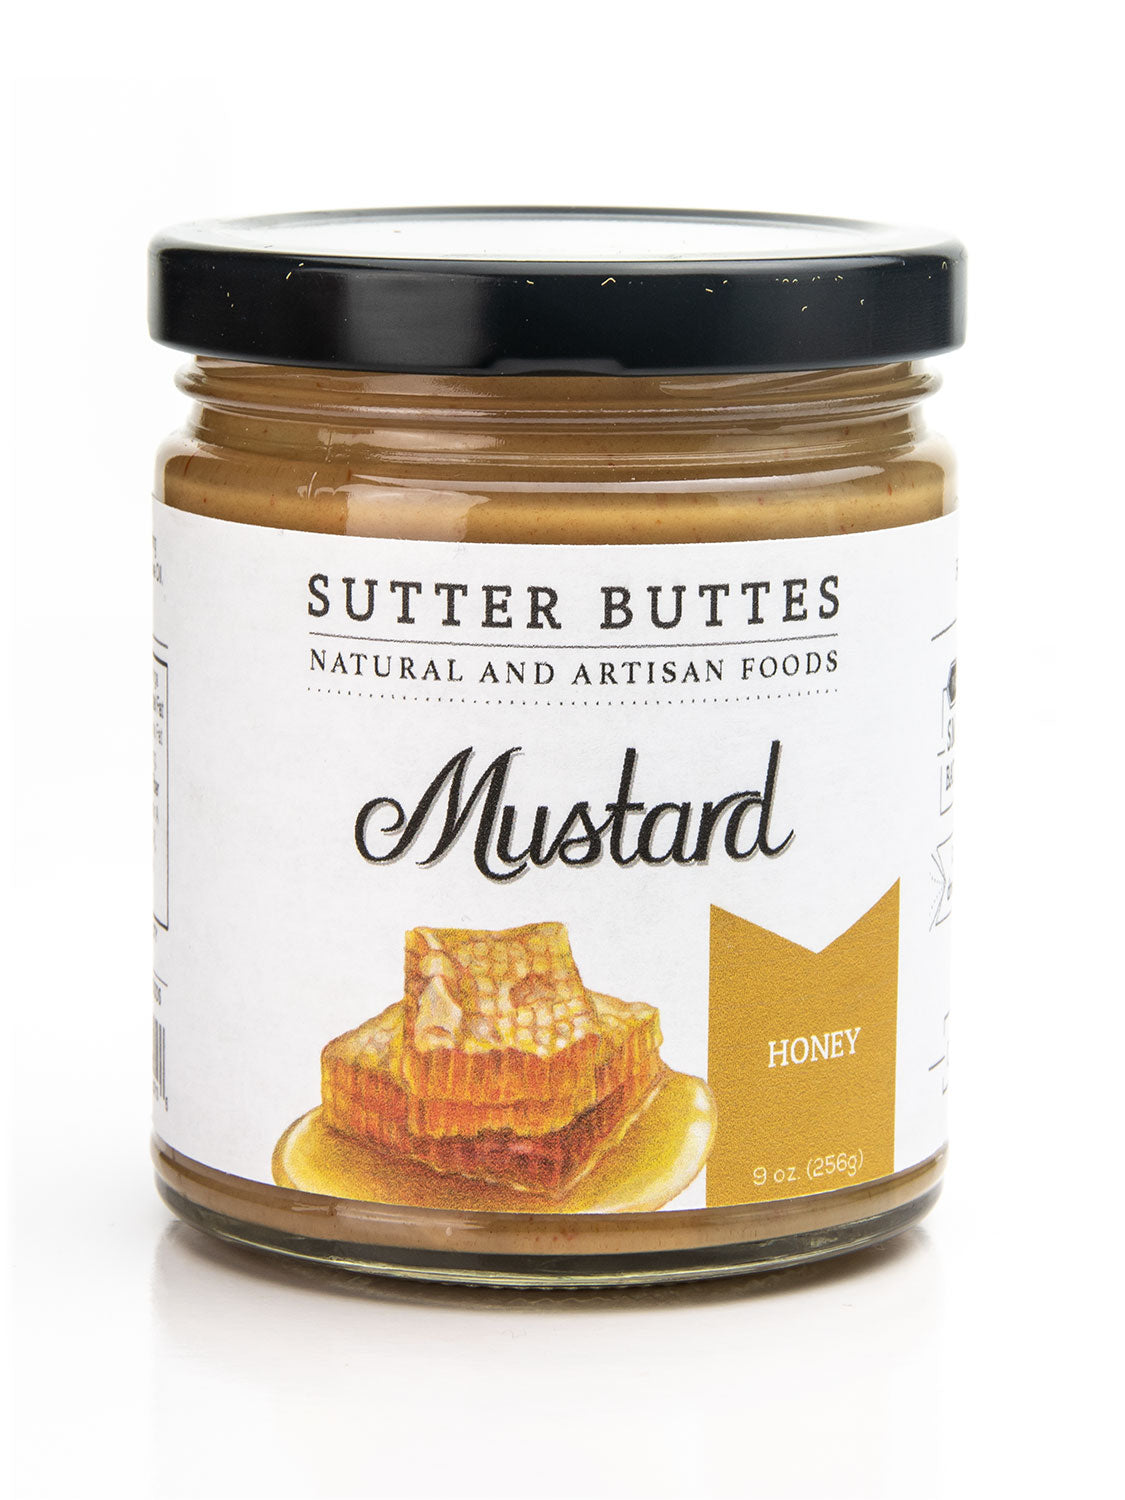 Sutter Buttes Mustard Honey